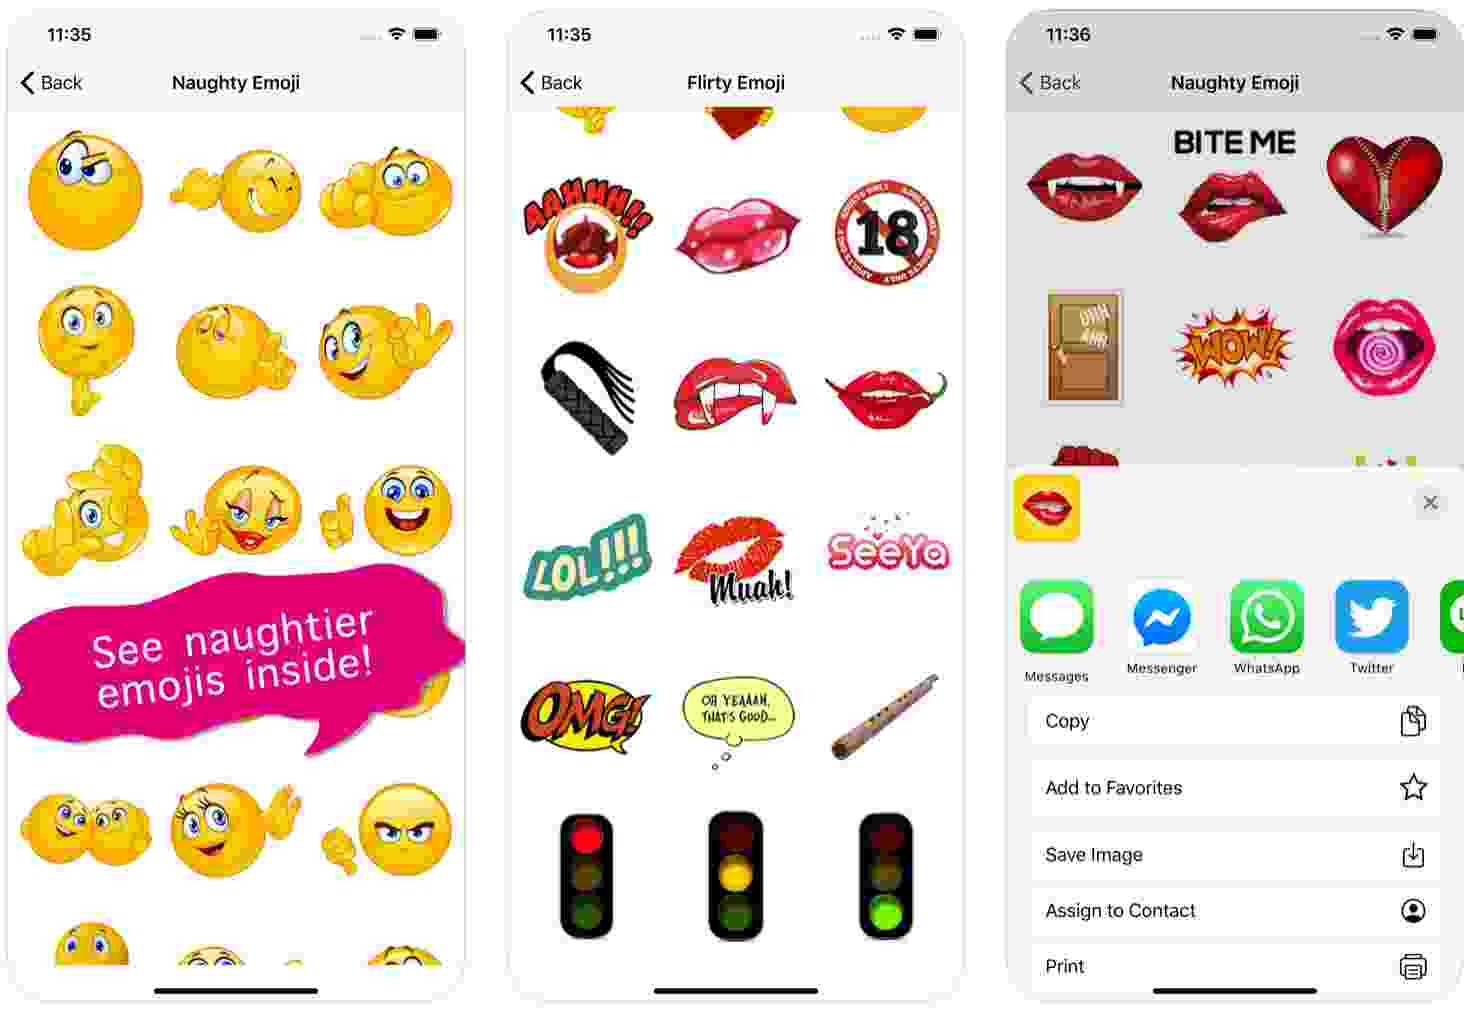 Adult-only emoji apps